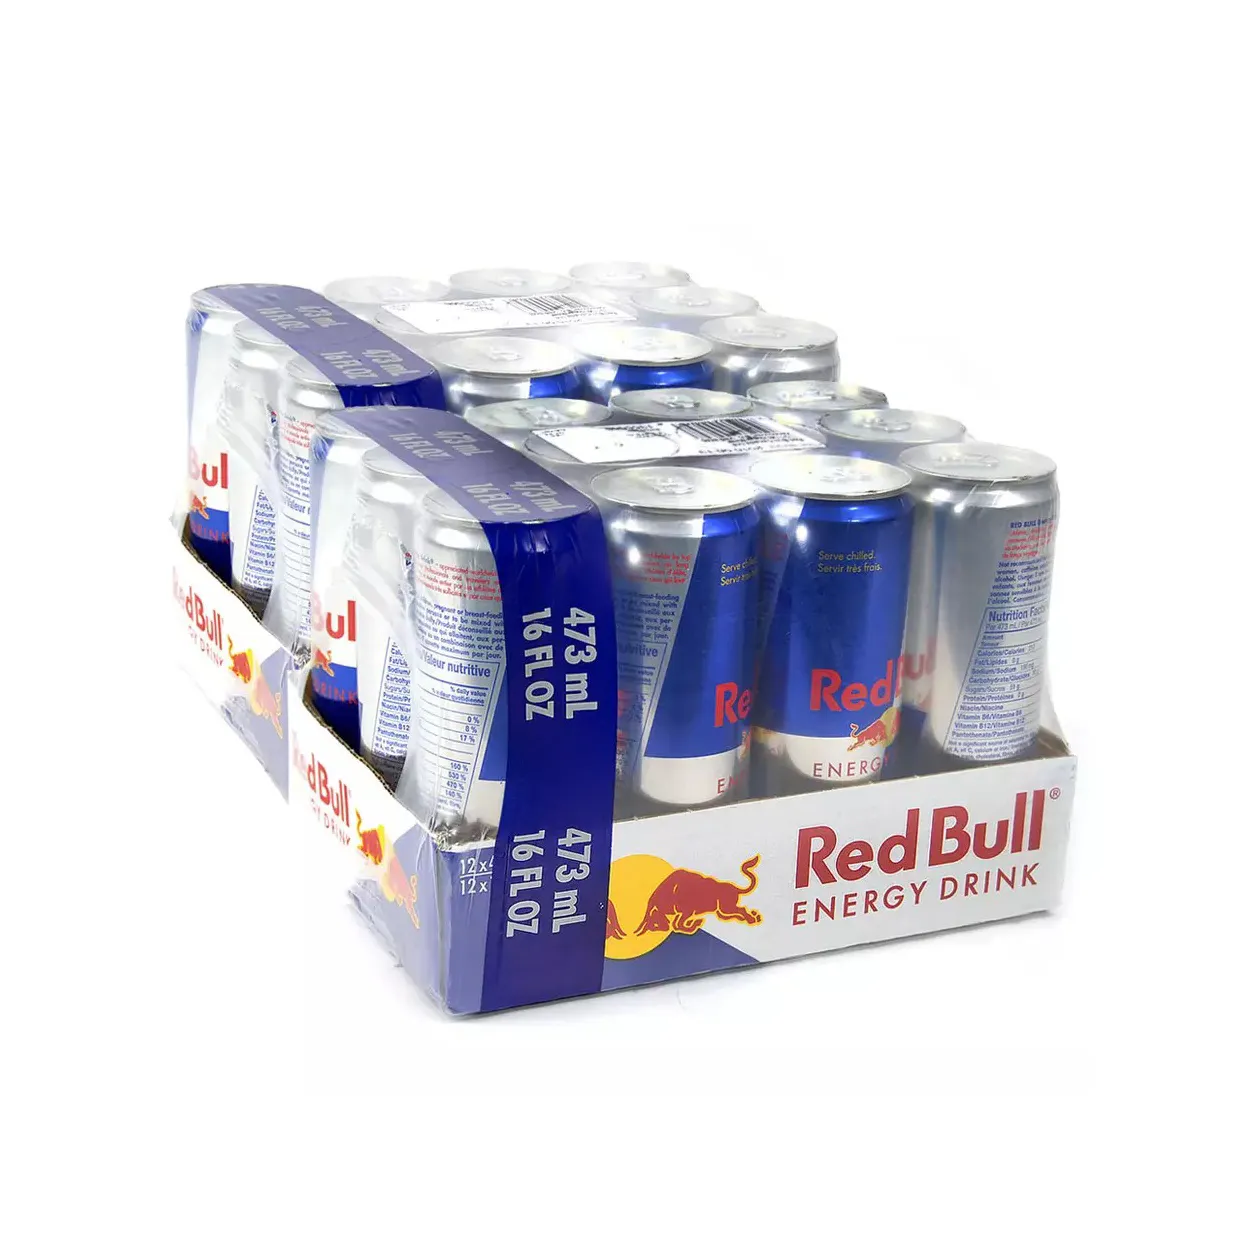 Original Red Bull Energy Drink 250 ml / Red Bull 355ml Energy Drink Original From Germany / Red Bull 473ml